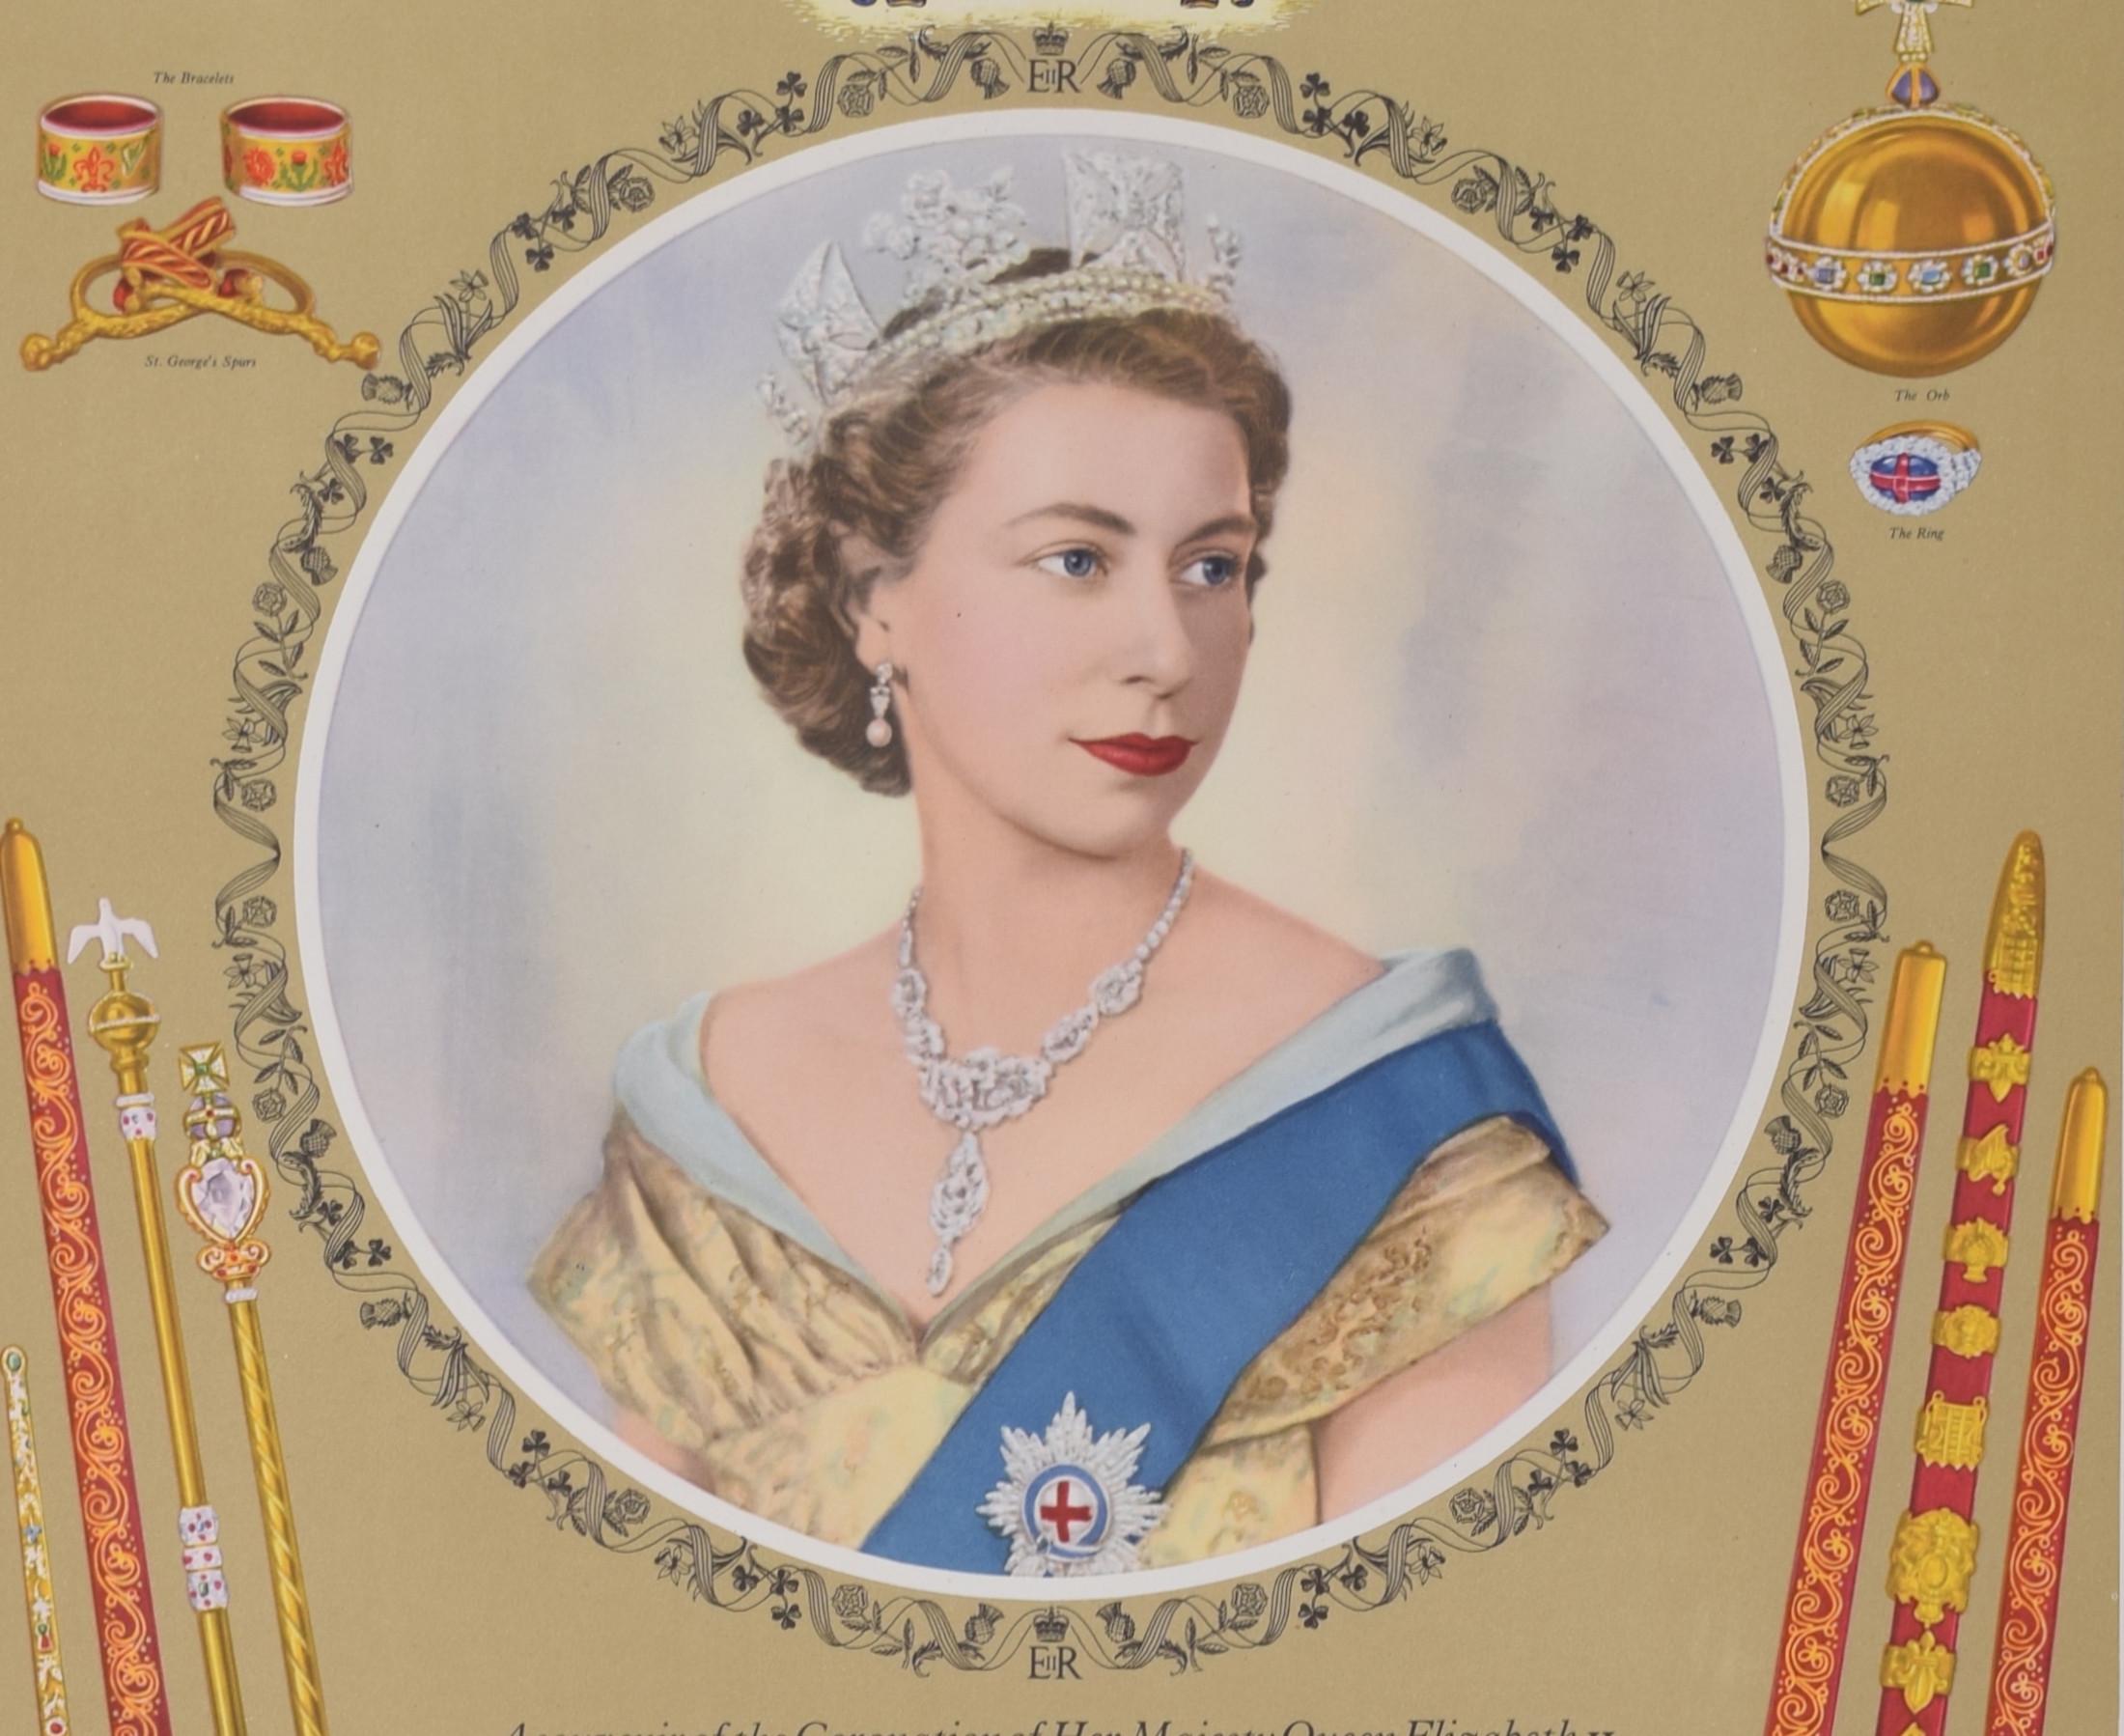 1953 Coronation Regalia von Königin Elisabeth II., Plakat für National Savings – Print von Dorothy Wilding